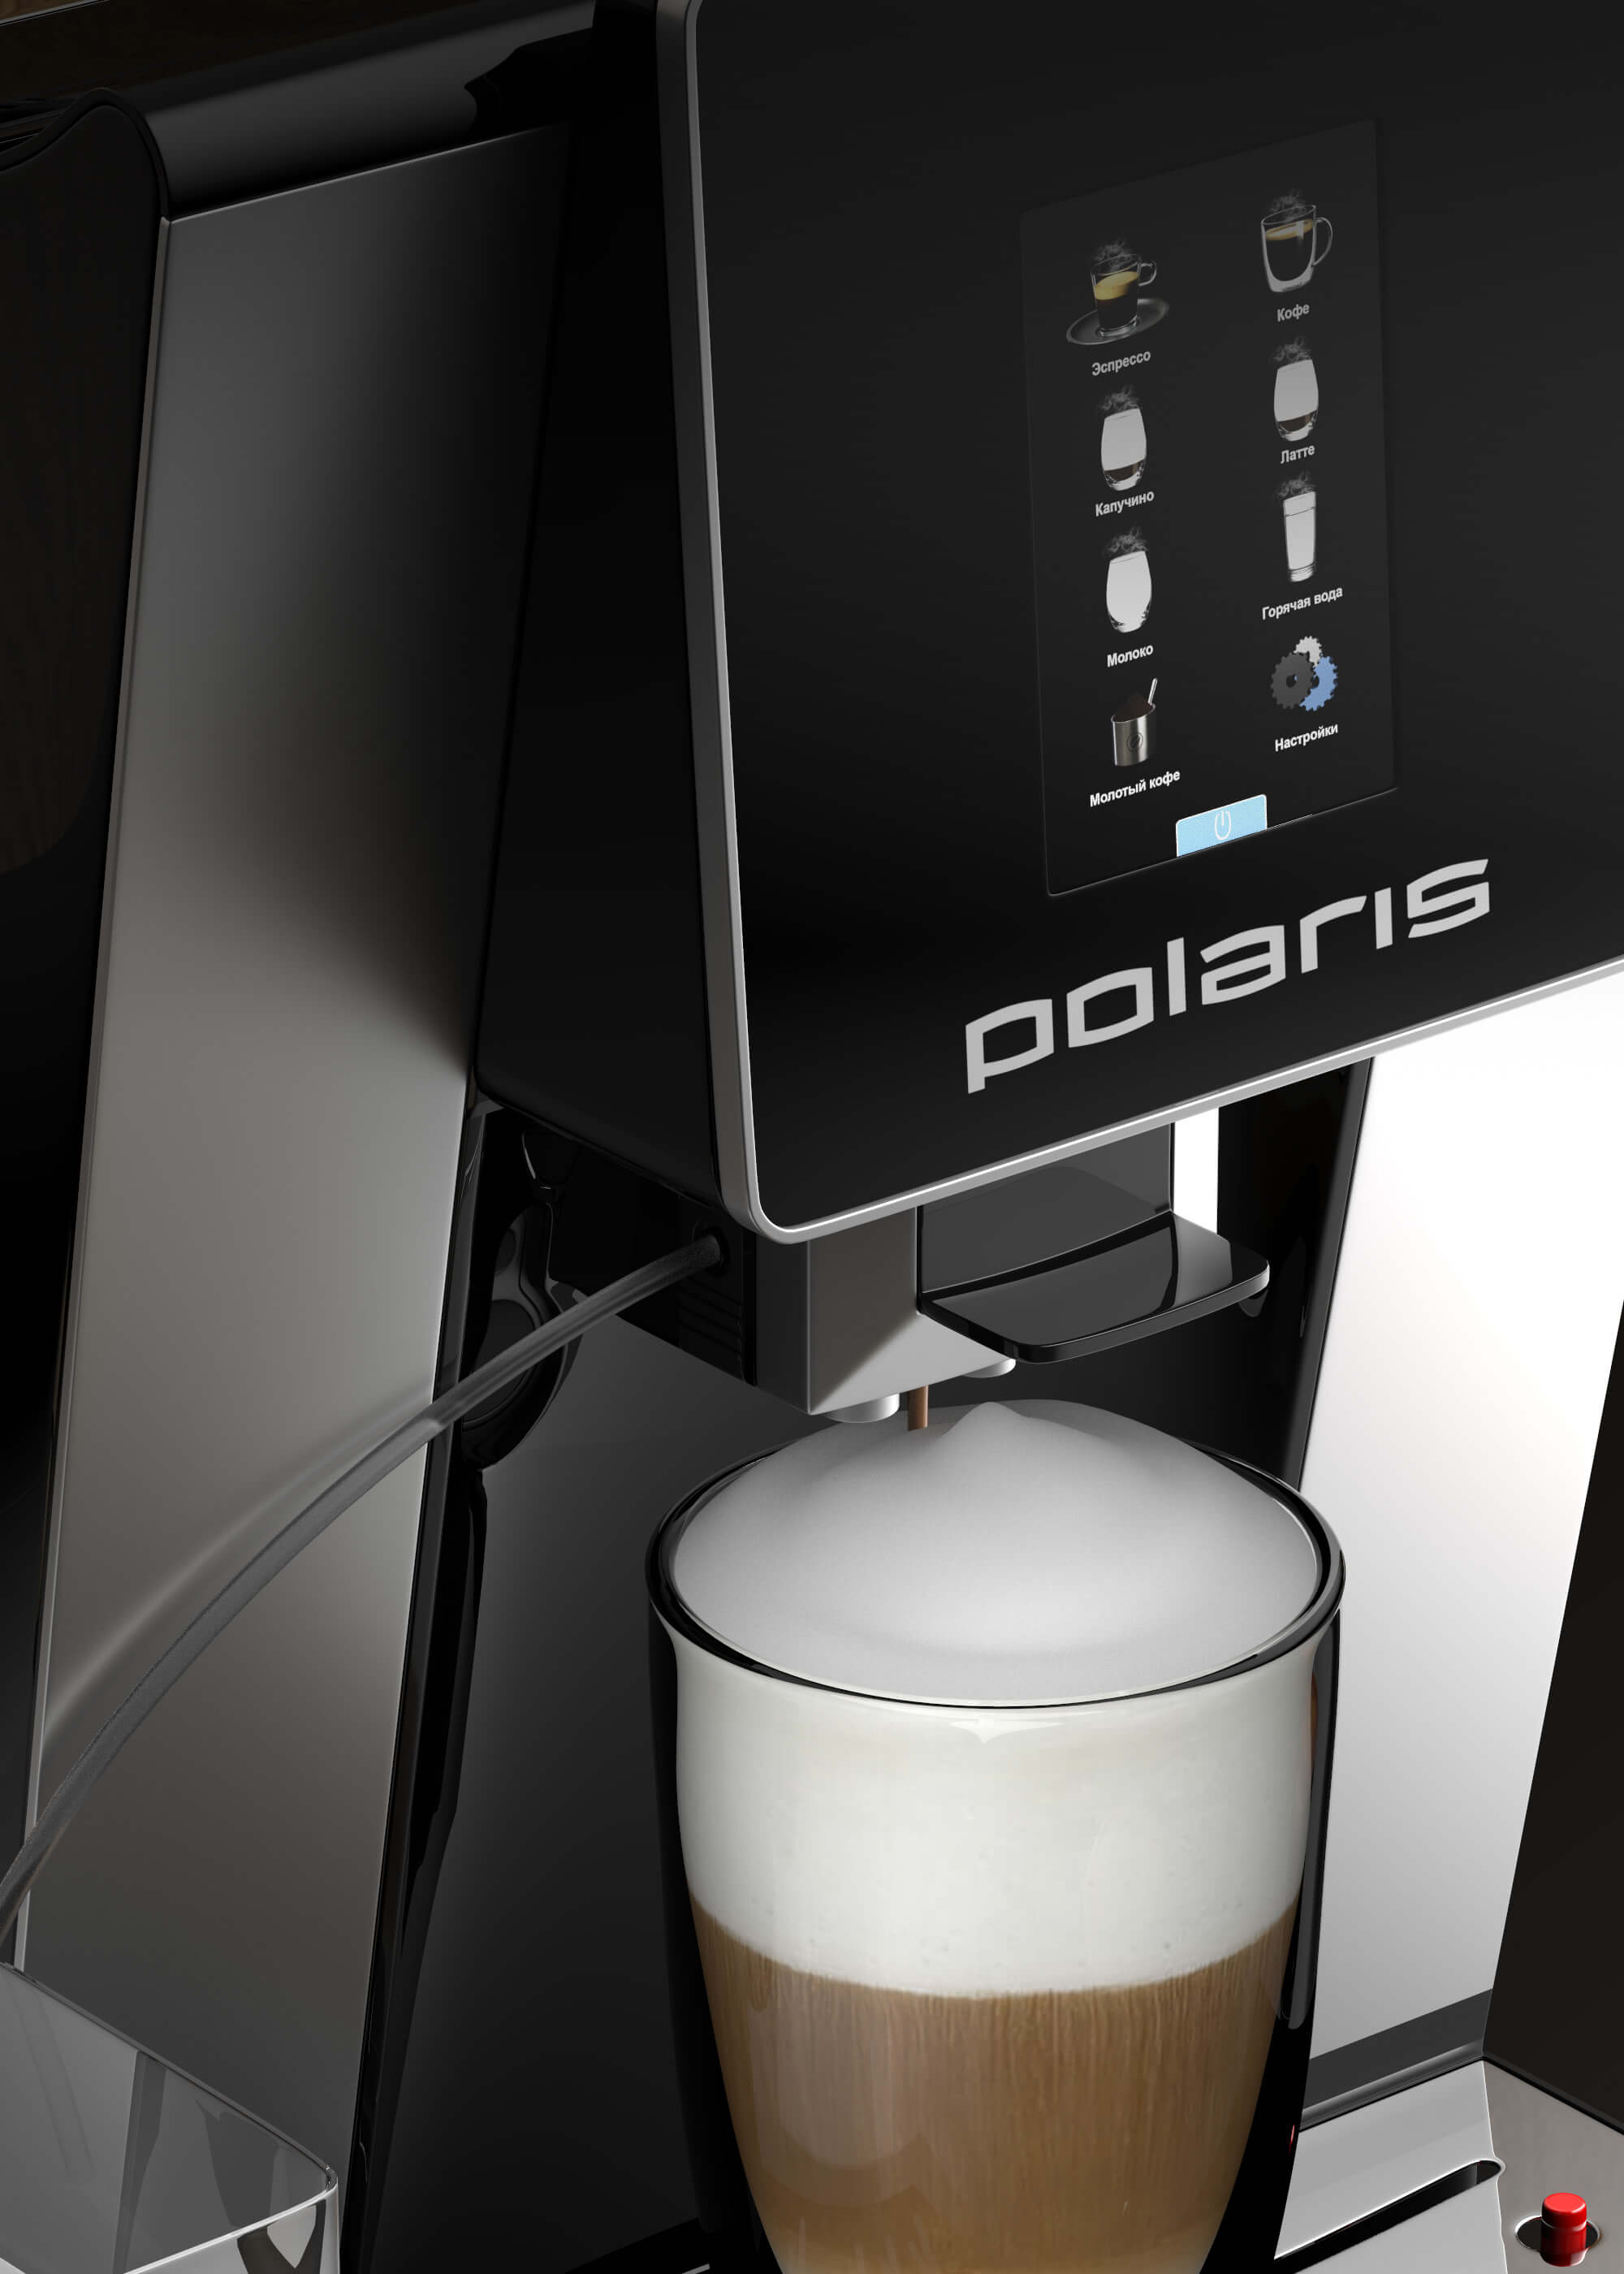 Кофемашина Polaris PACM 2060AC